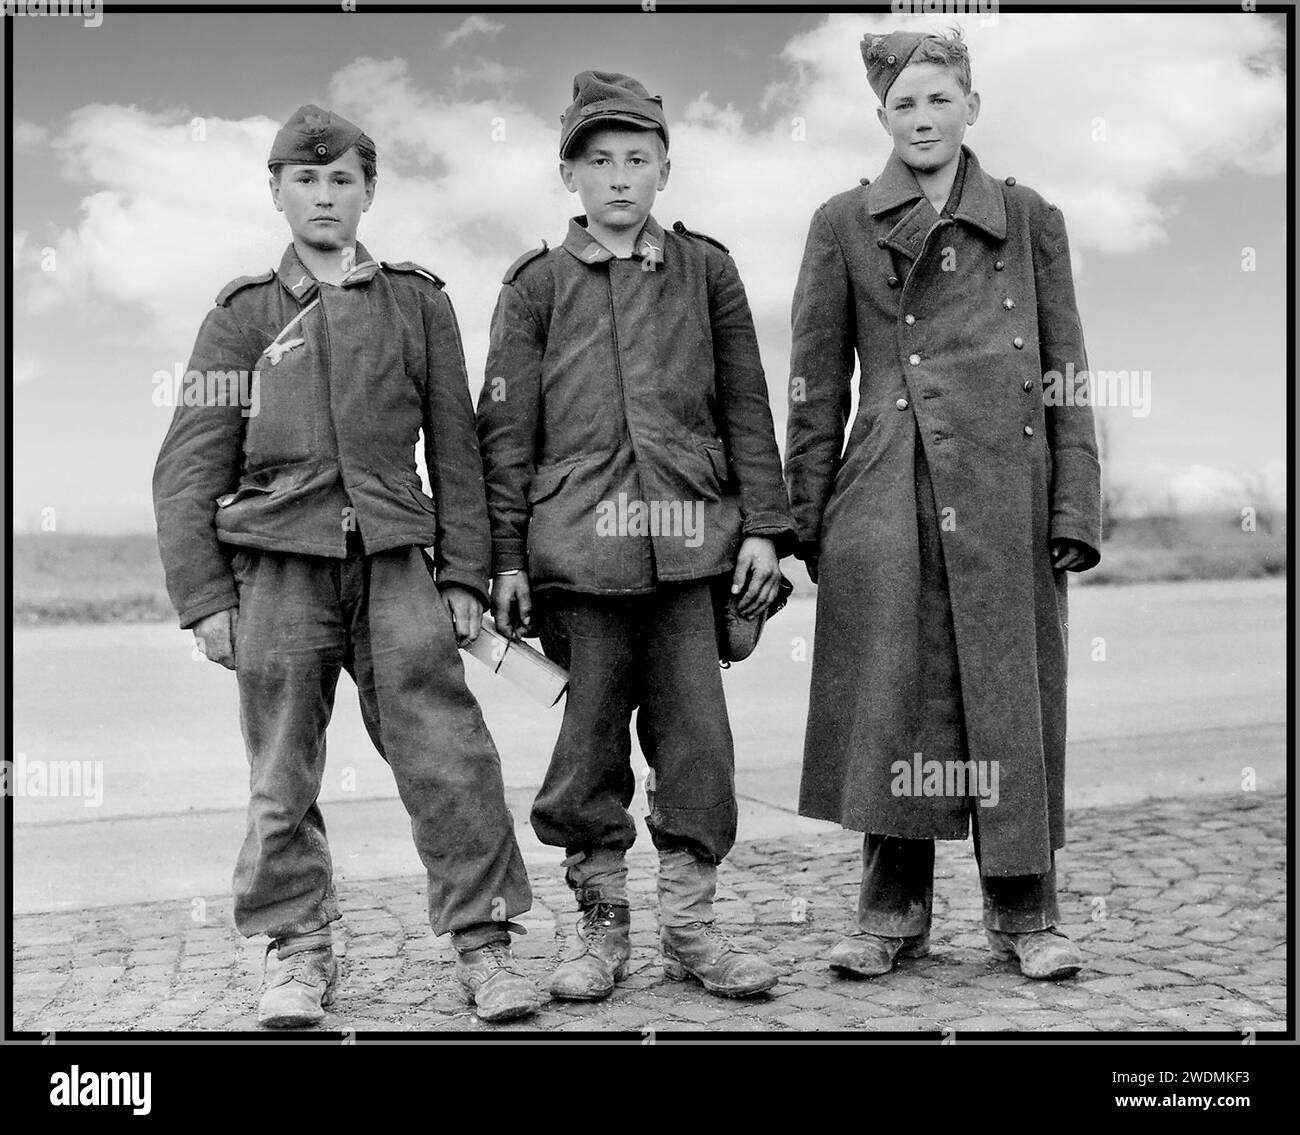 HITLER-JUGENDARMEE vierzehnjährige deutsche Jugendliche, Soldaten der Hitler-Jugend, die im April 1945 von Einheiten der US-Armee gefangen genommen wurden. Berstadt, Provinz Hessen, Deutschland Datum: April 1945 Stockfoto